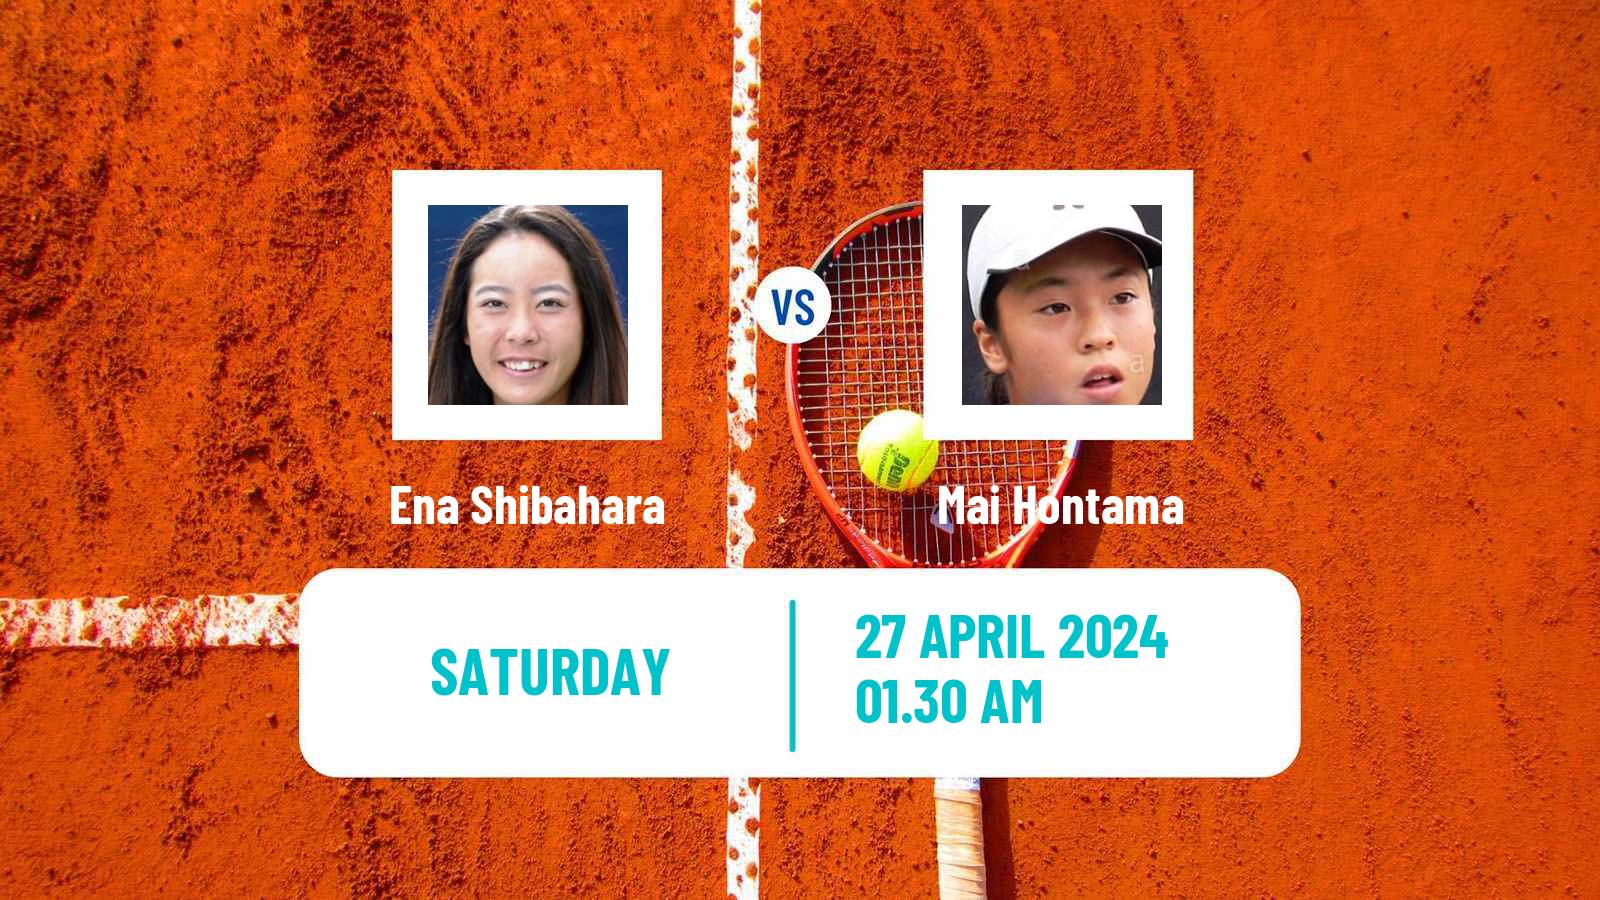 Tennis ITF W100 Tokyo Women Ena Shibahara - Mai Hontama